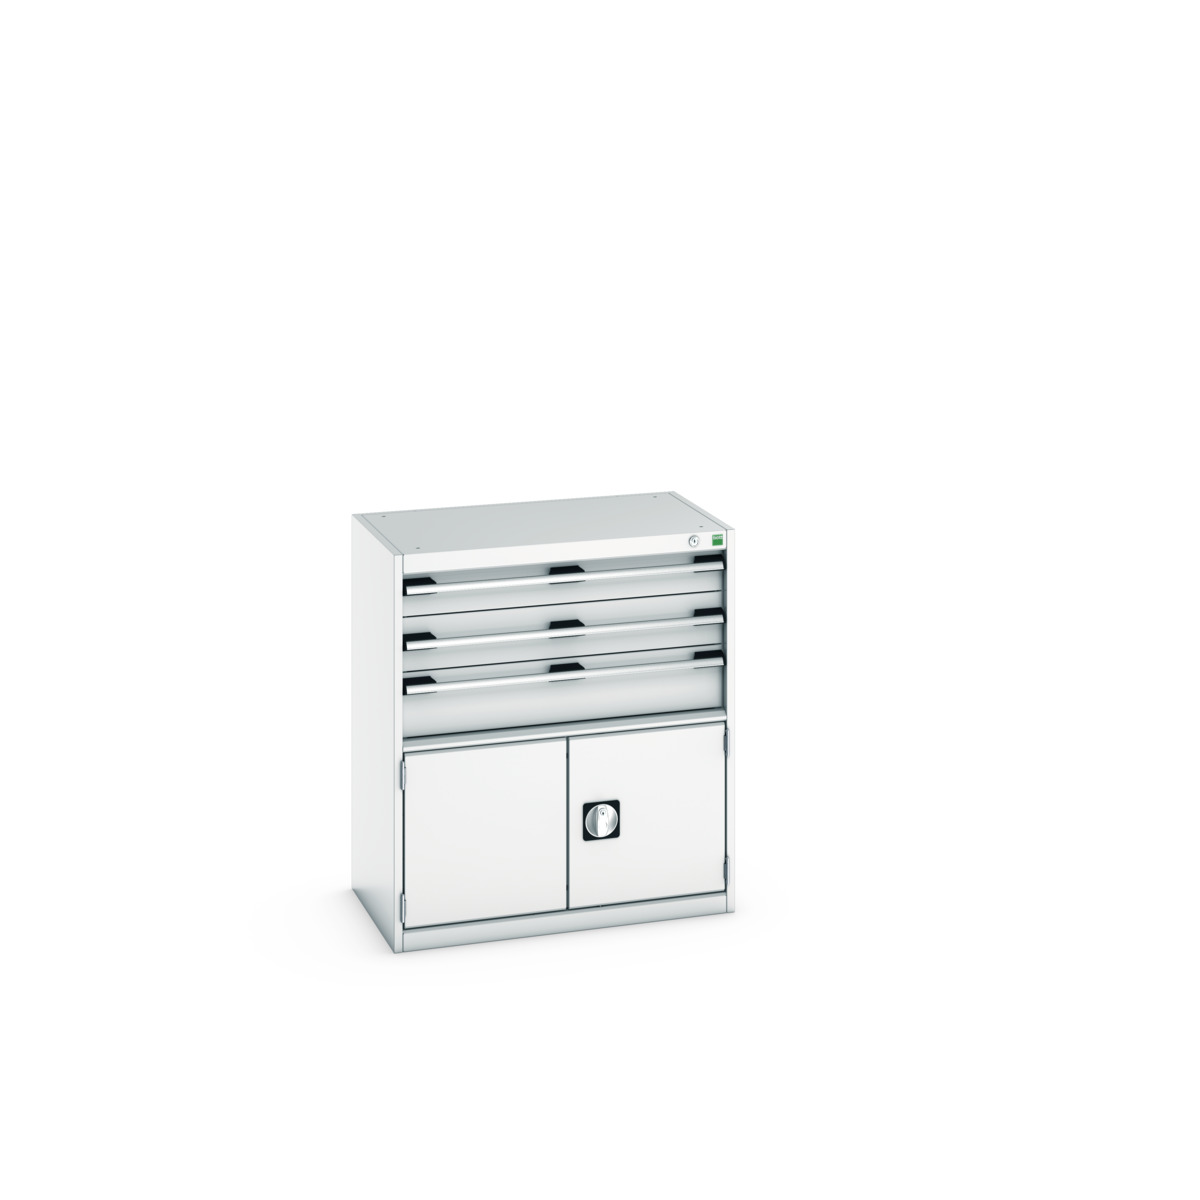 40012023.16V - cubio drawer-door cabinet